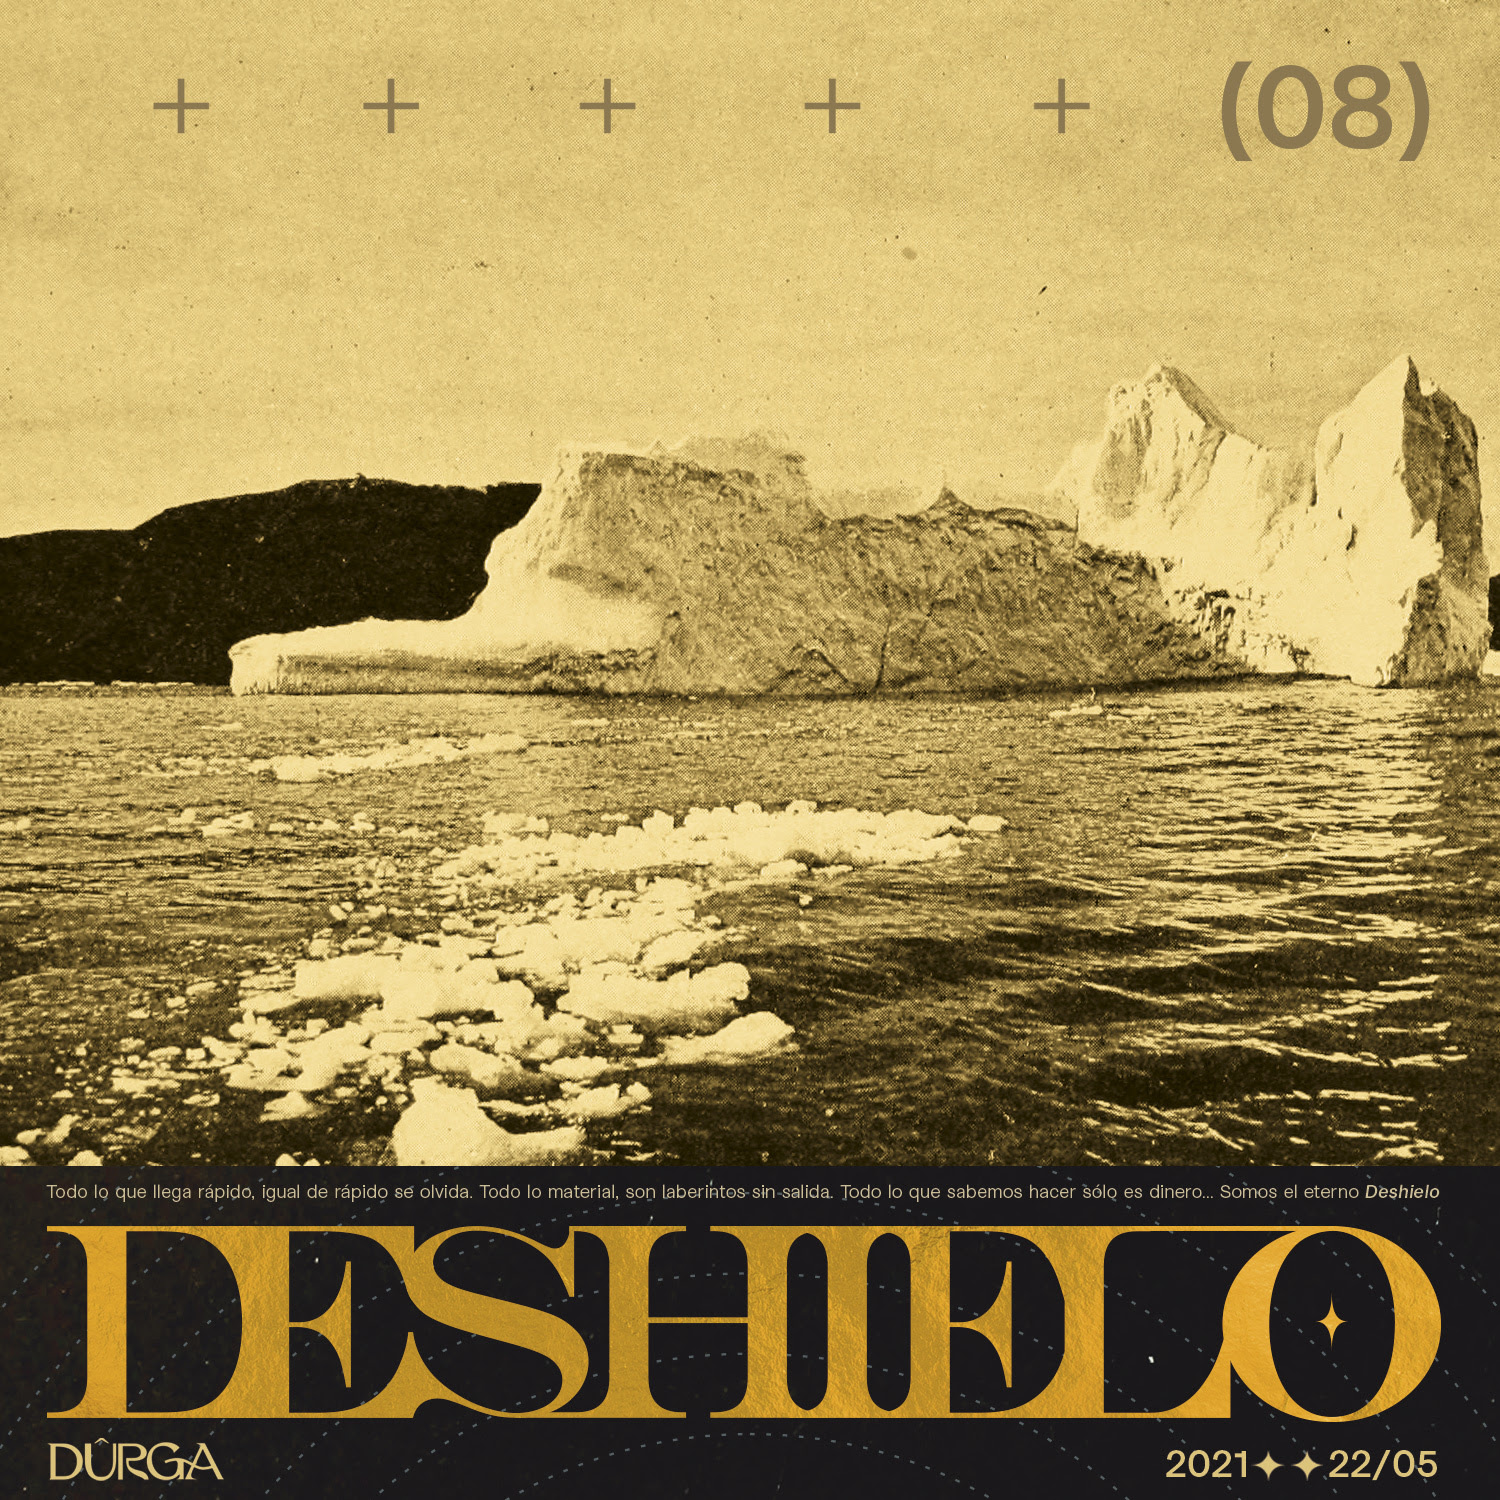 Dûrga estrena el single y vídeo “Deshielo”